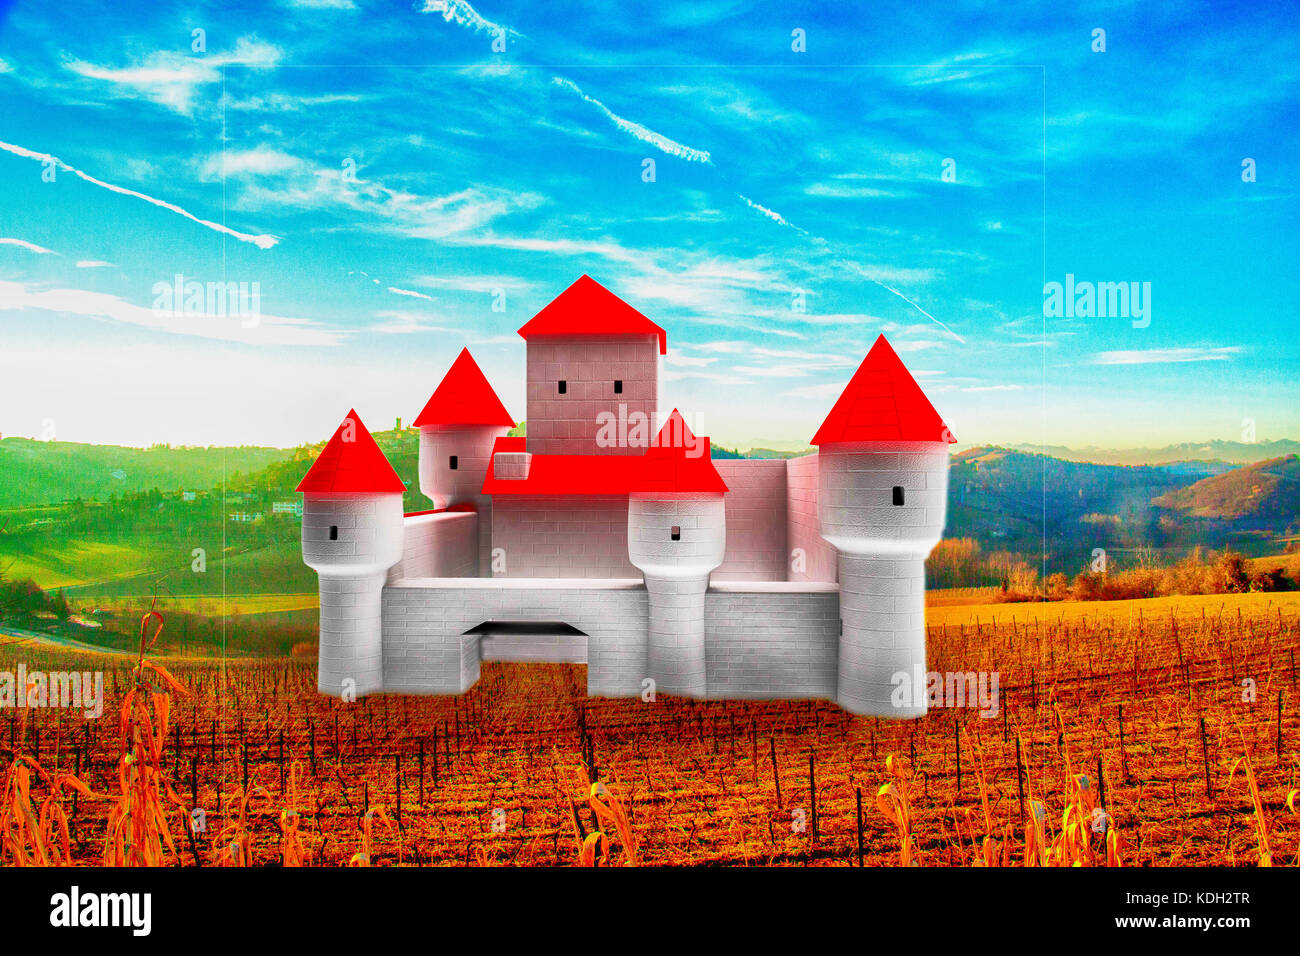 Château de fantaisie dans le pays, rendu 3d, image horizontale Banque D'Images